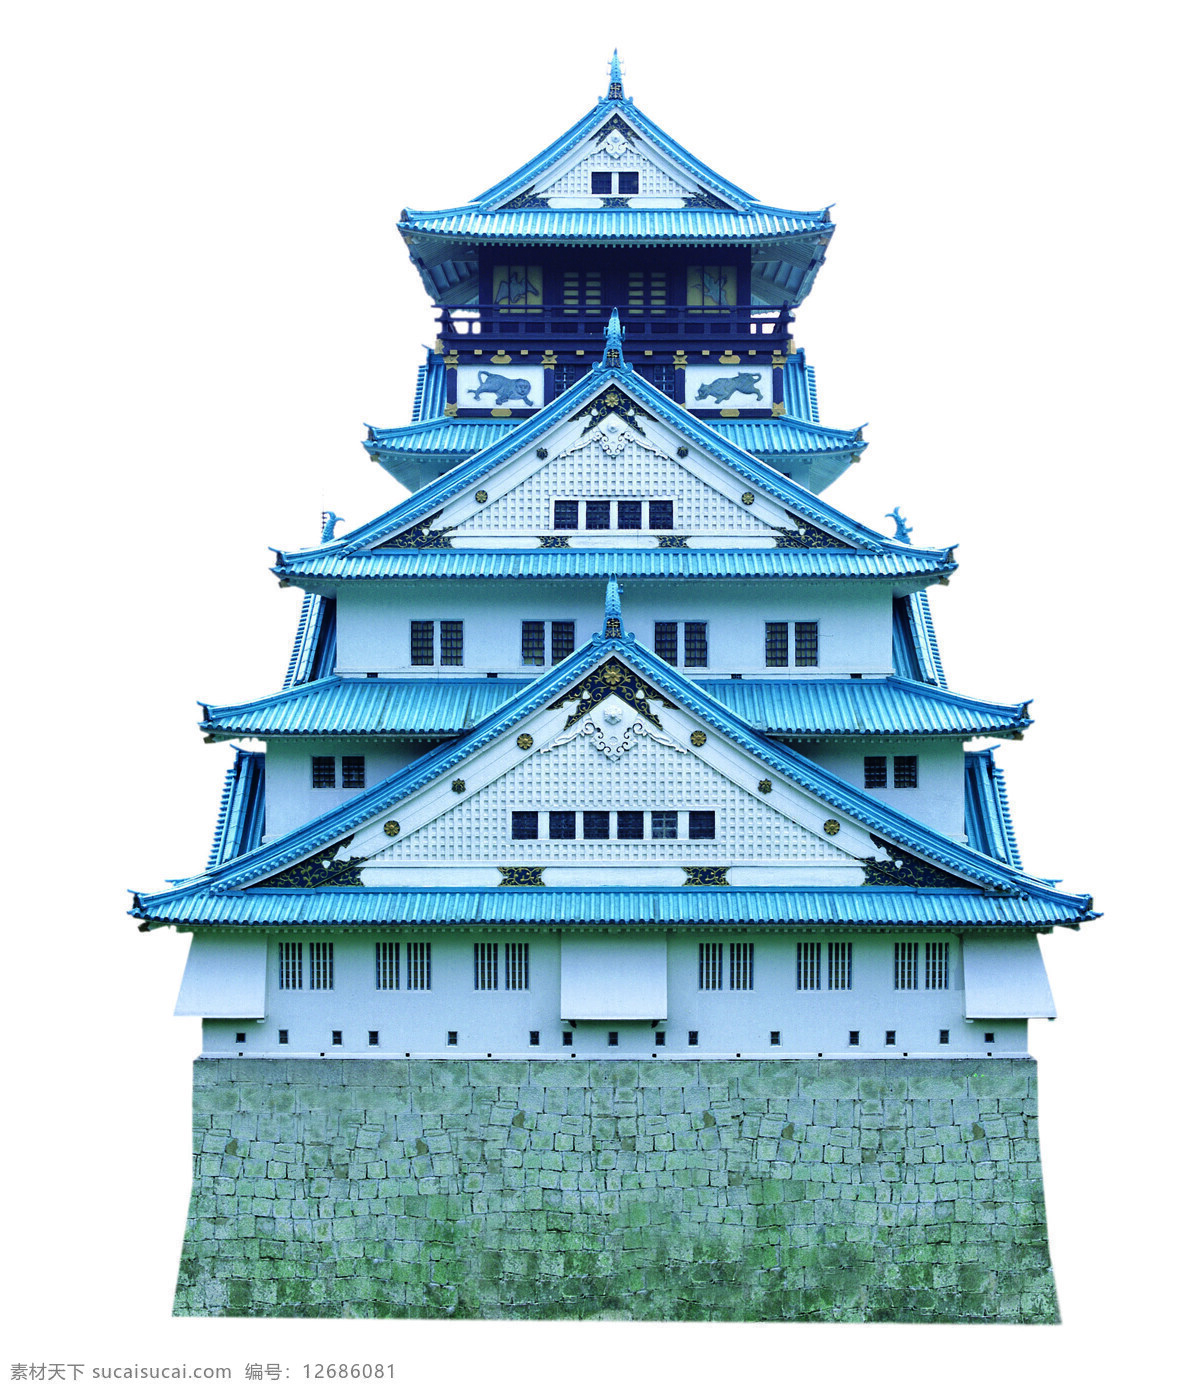 姬路城 古建筑 历史文化遗产 名胜古迹 世界著名建筑 日本建筑 自然景观 自然风光 设计图库